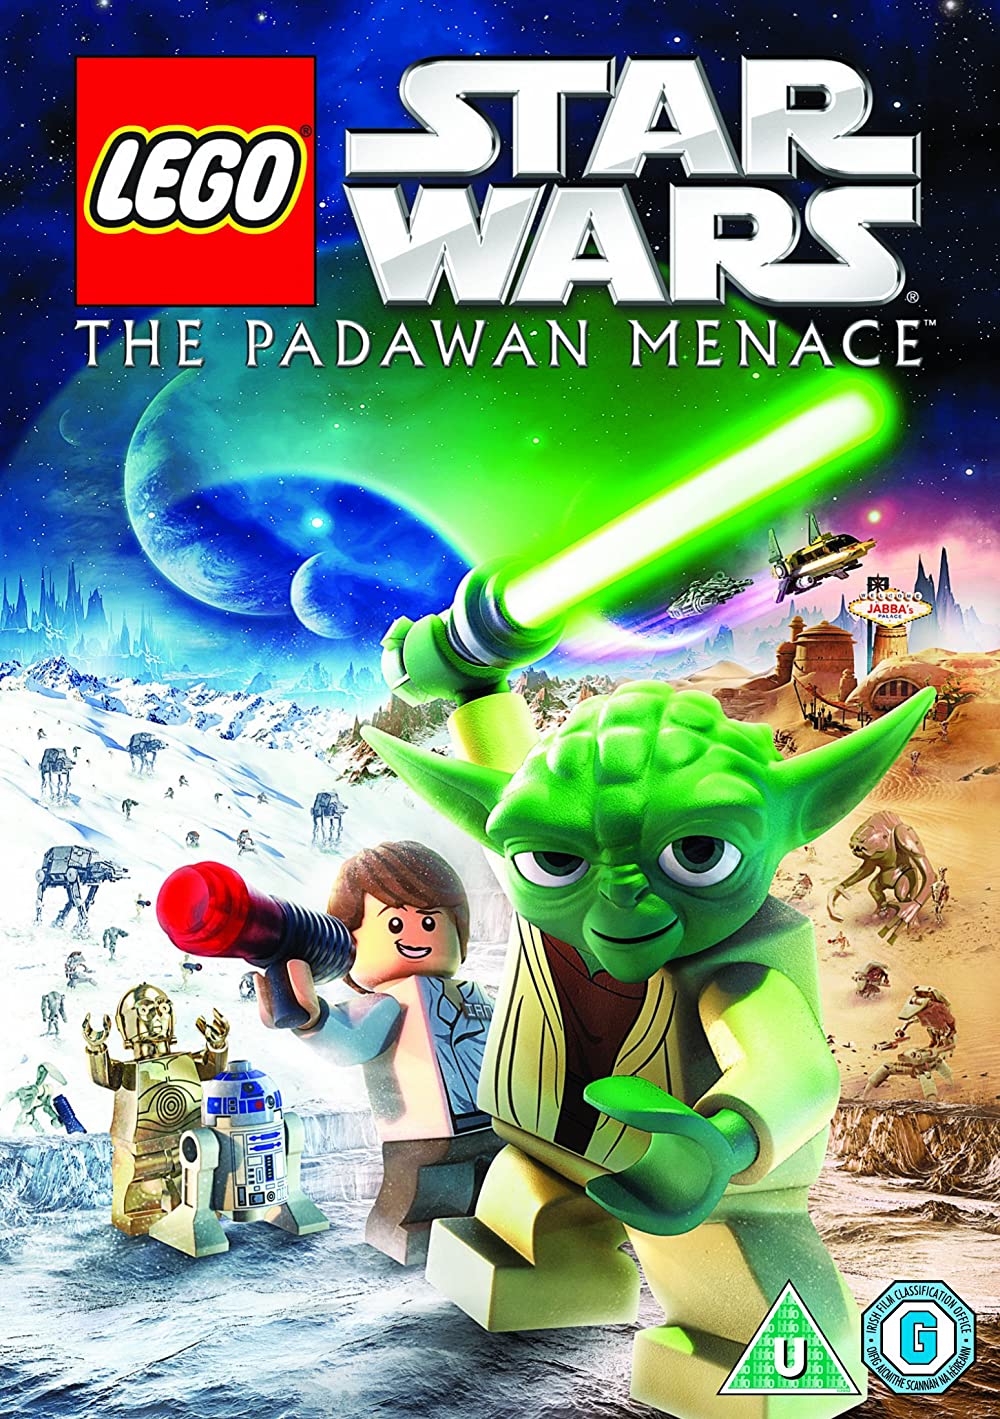 Download Lego Star Wars: The Padawan Menace Movie | Lego Star Wars: The Padawan Menace Movie Review